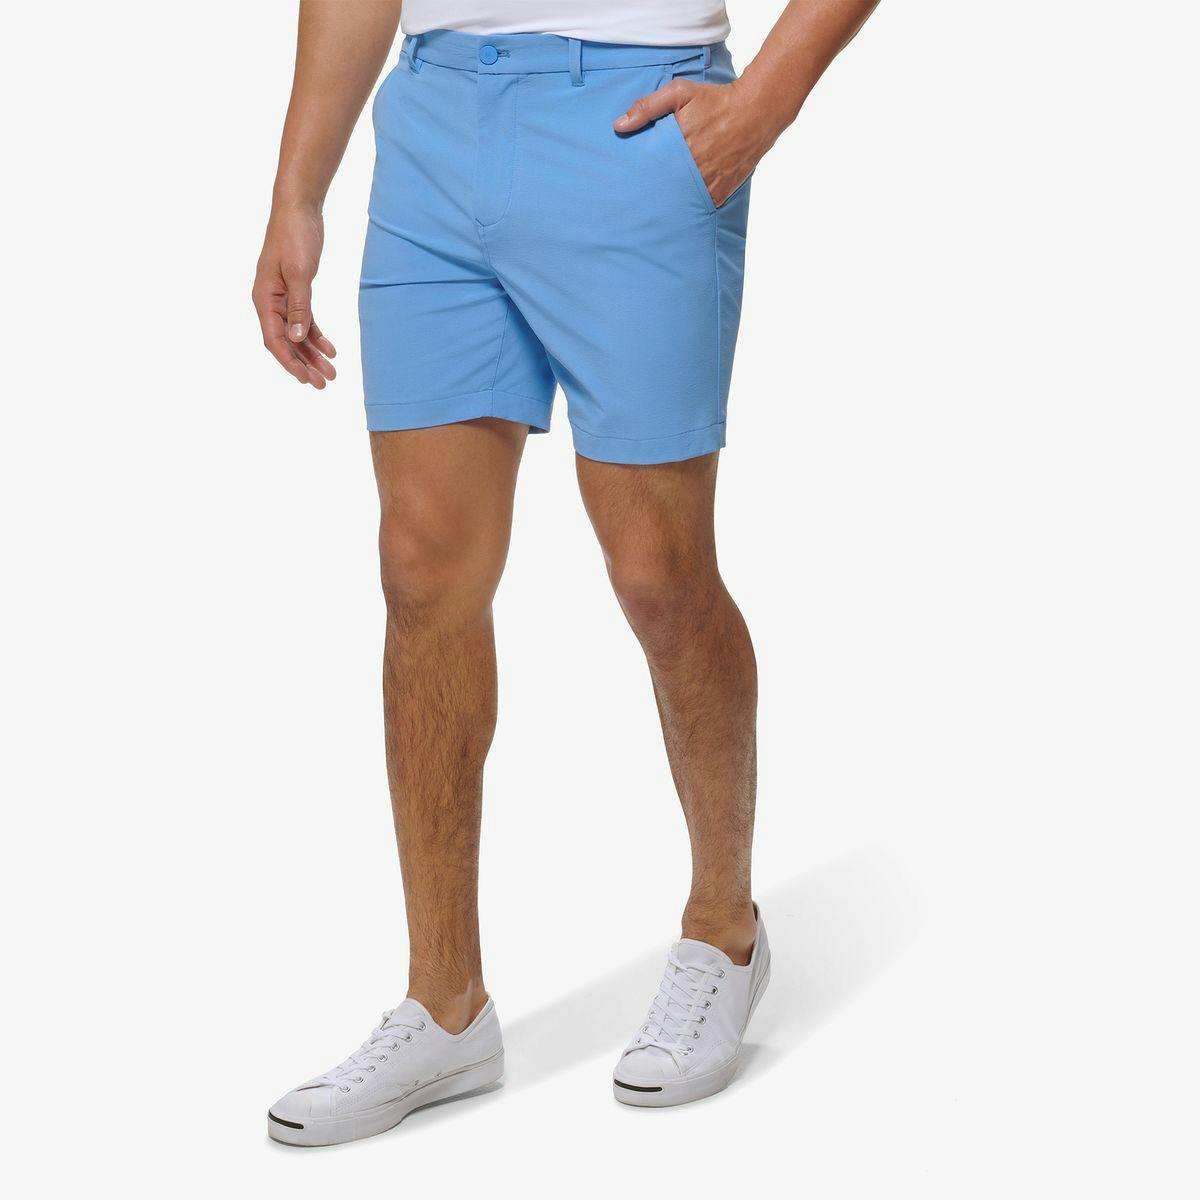 Helmsman Shorts - Product Image 2